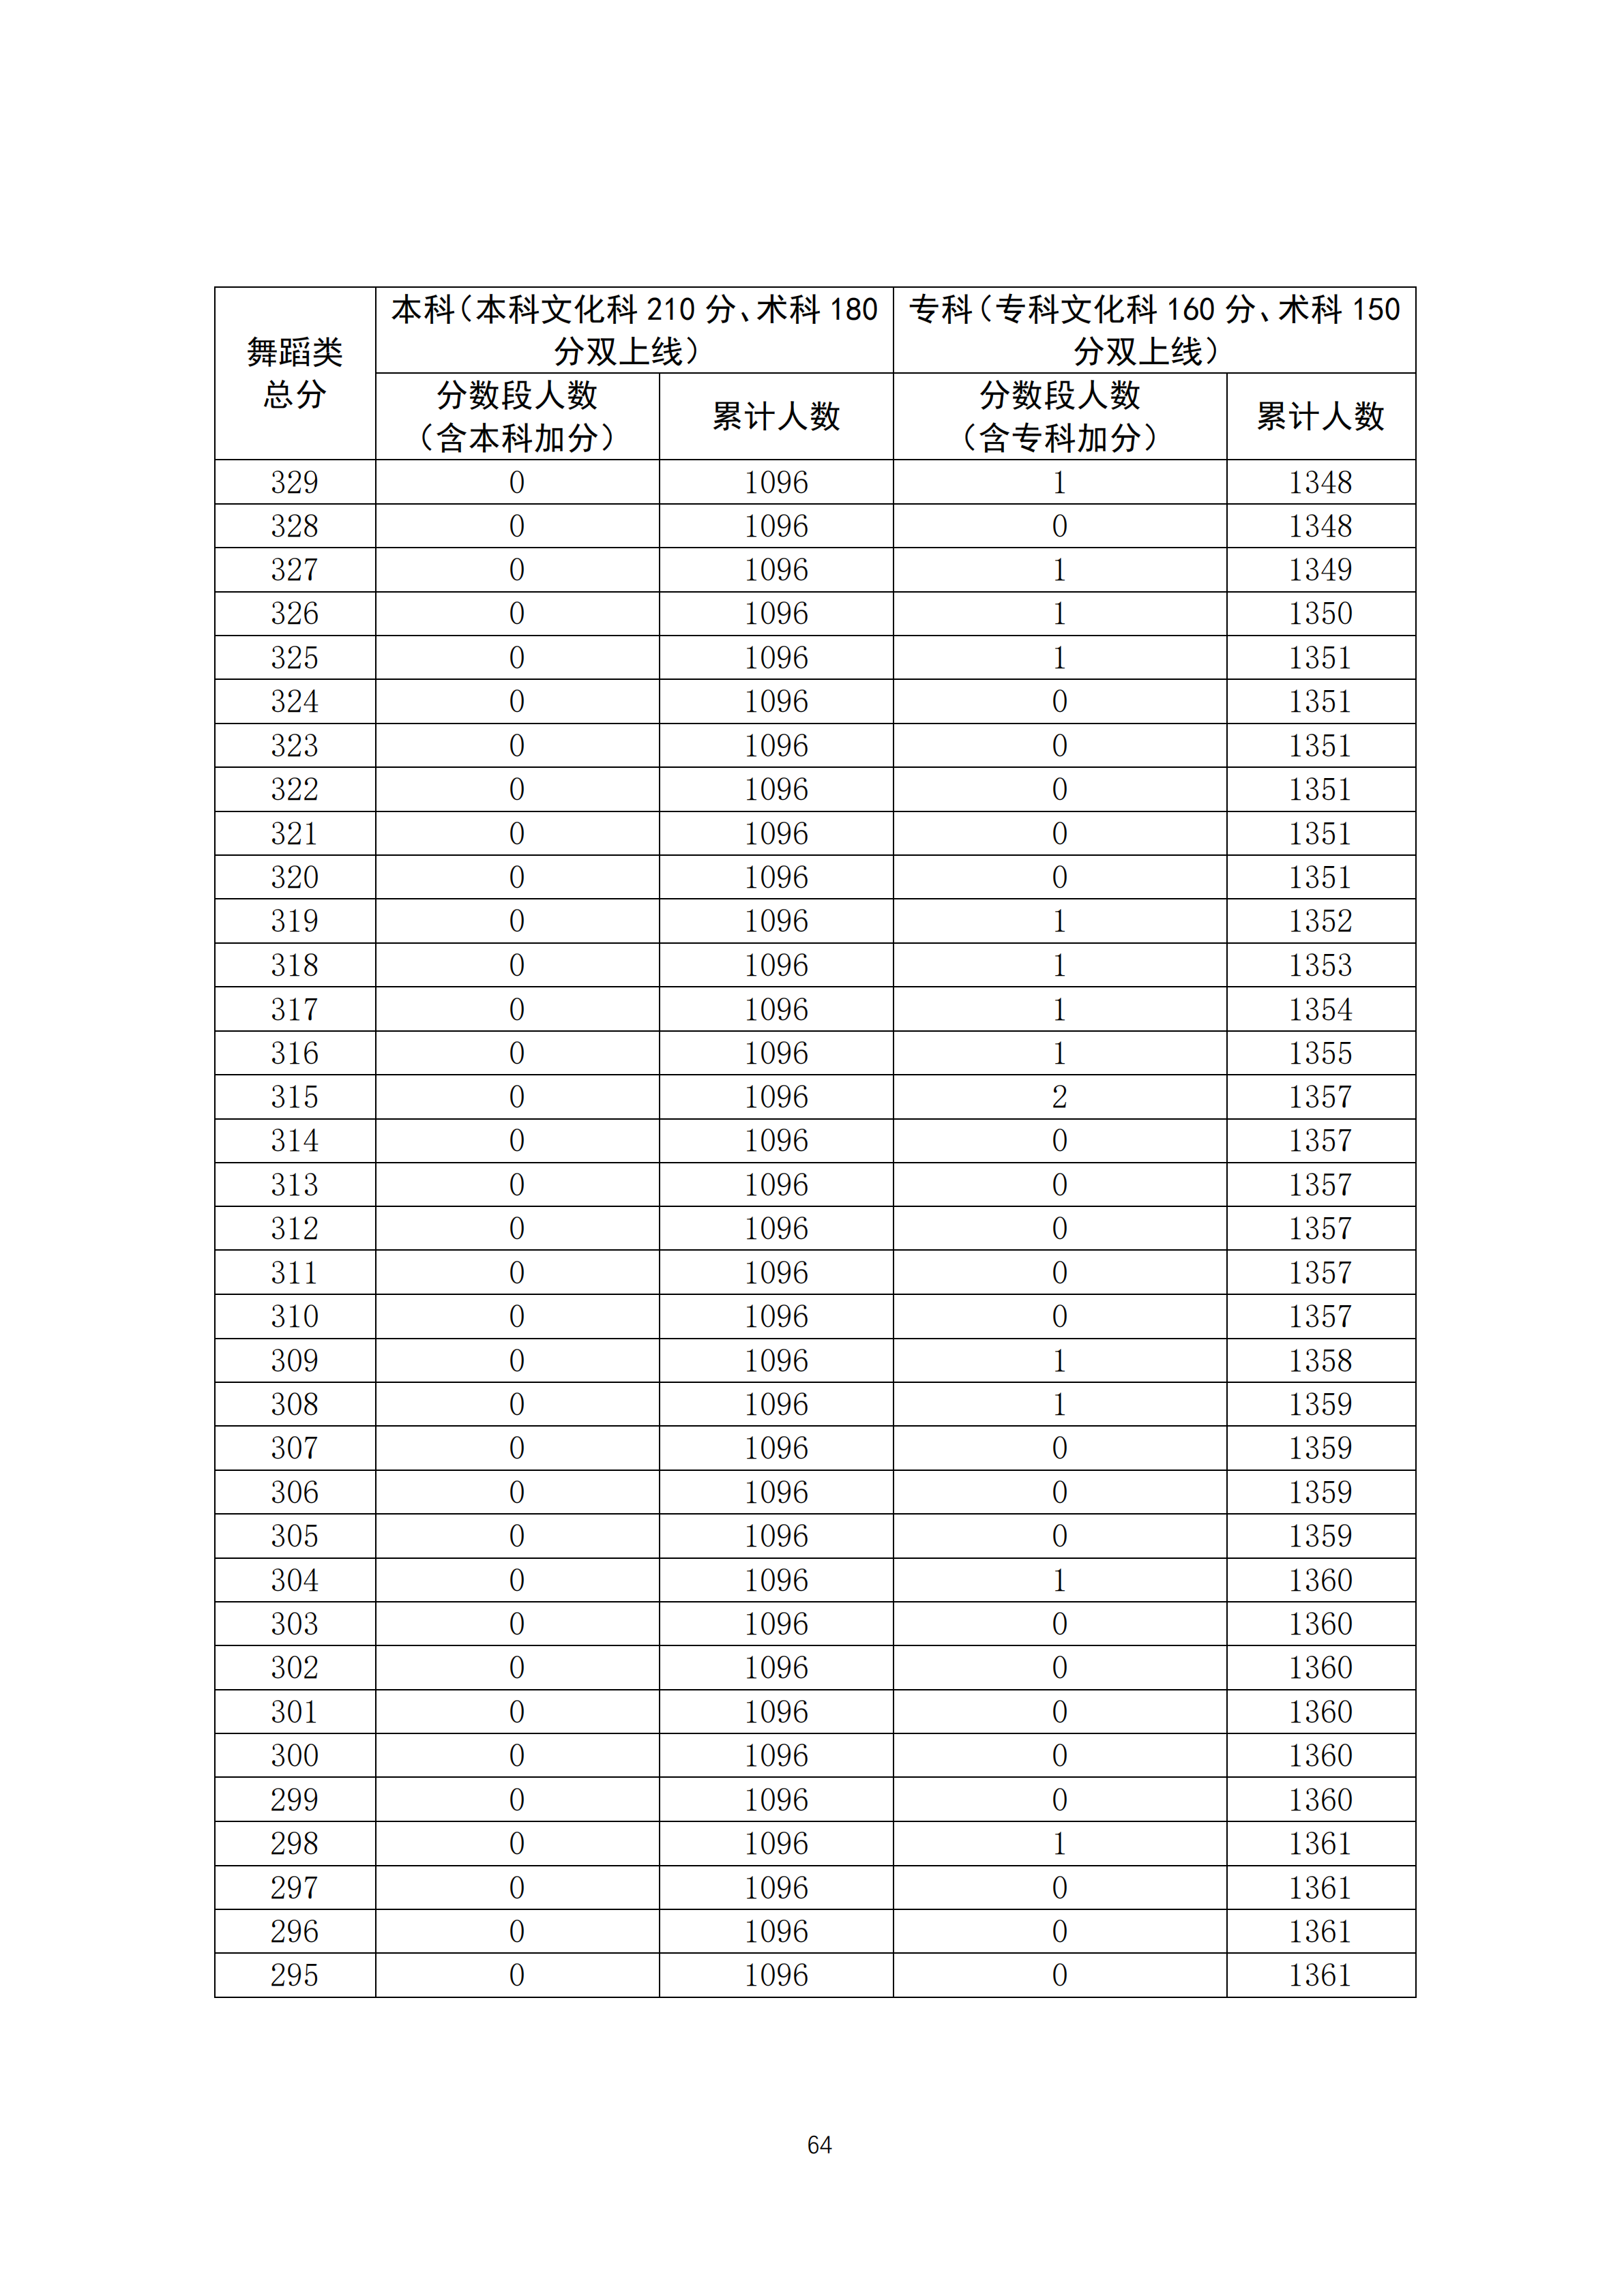 2020广东高考一分一段表 舞蹈类成绩排名及累计考生人数